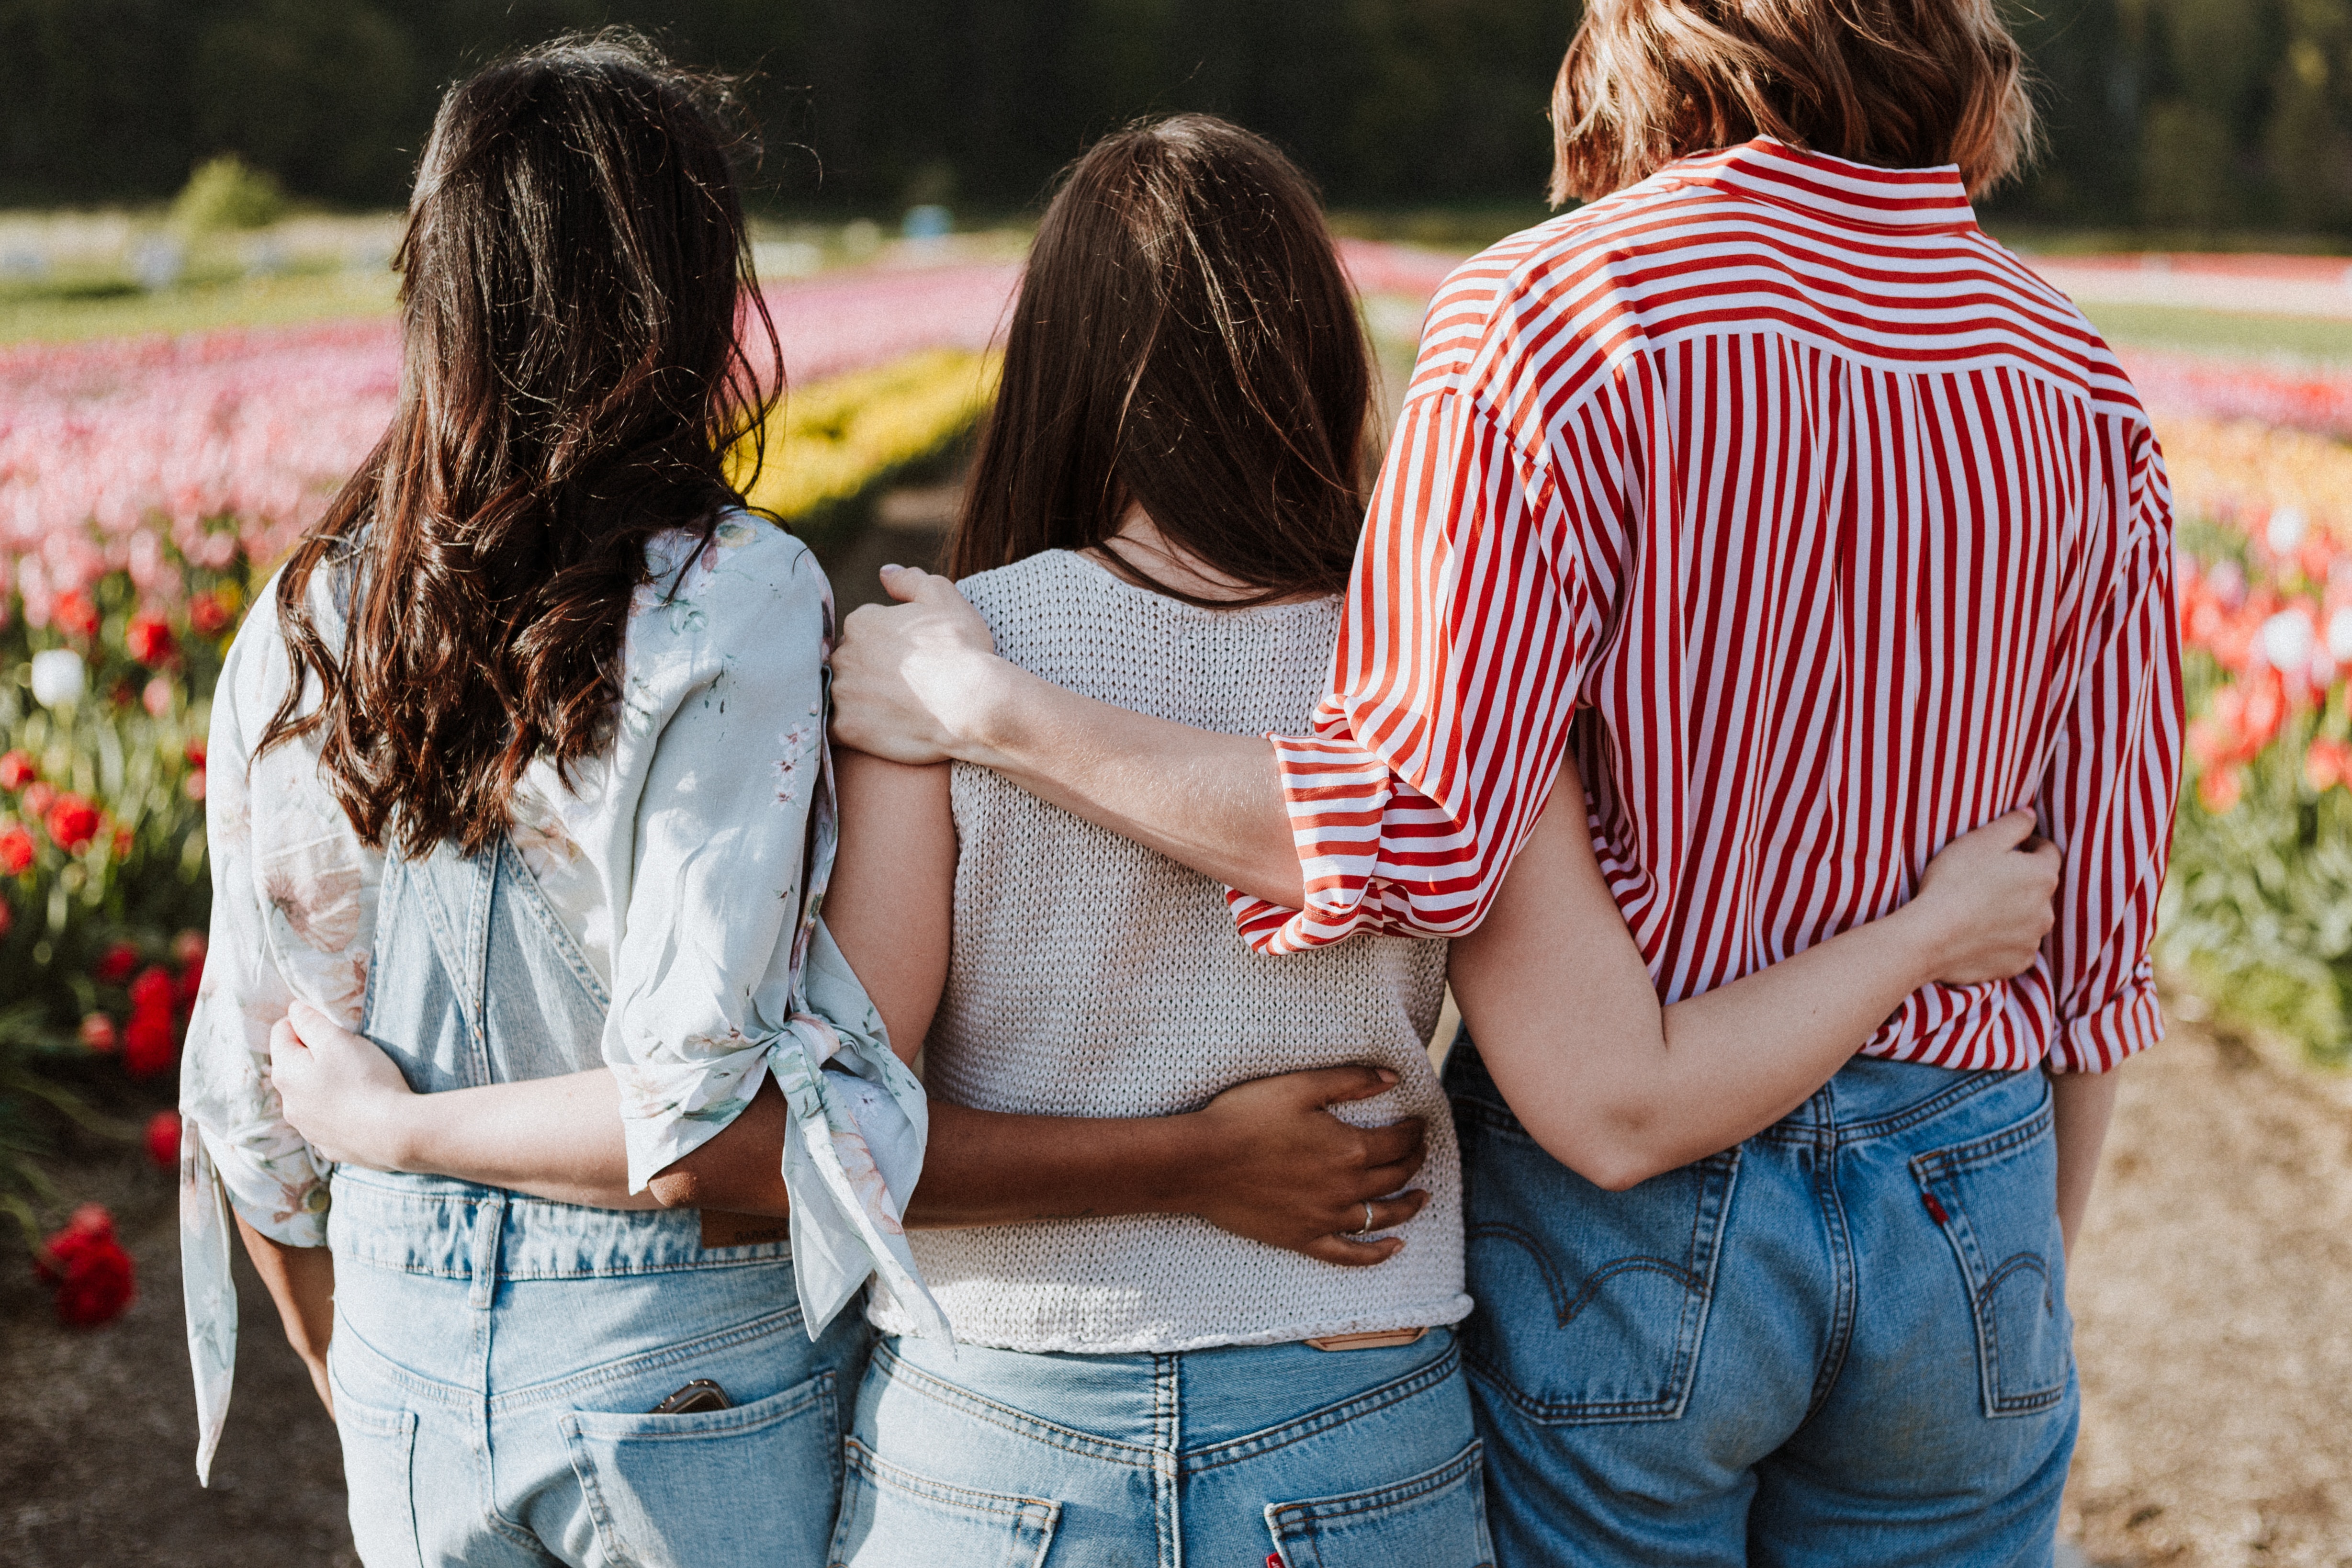 იცით, რომ მეგობრობის 5 განსხვავებული ფორმა არსებობს - სად უფრო კომფორტულად გრძნობთ თავს?